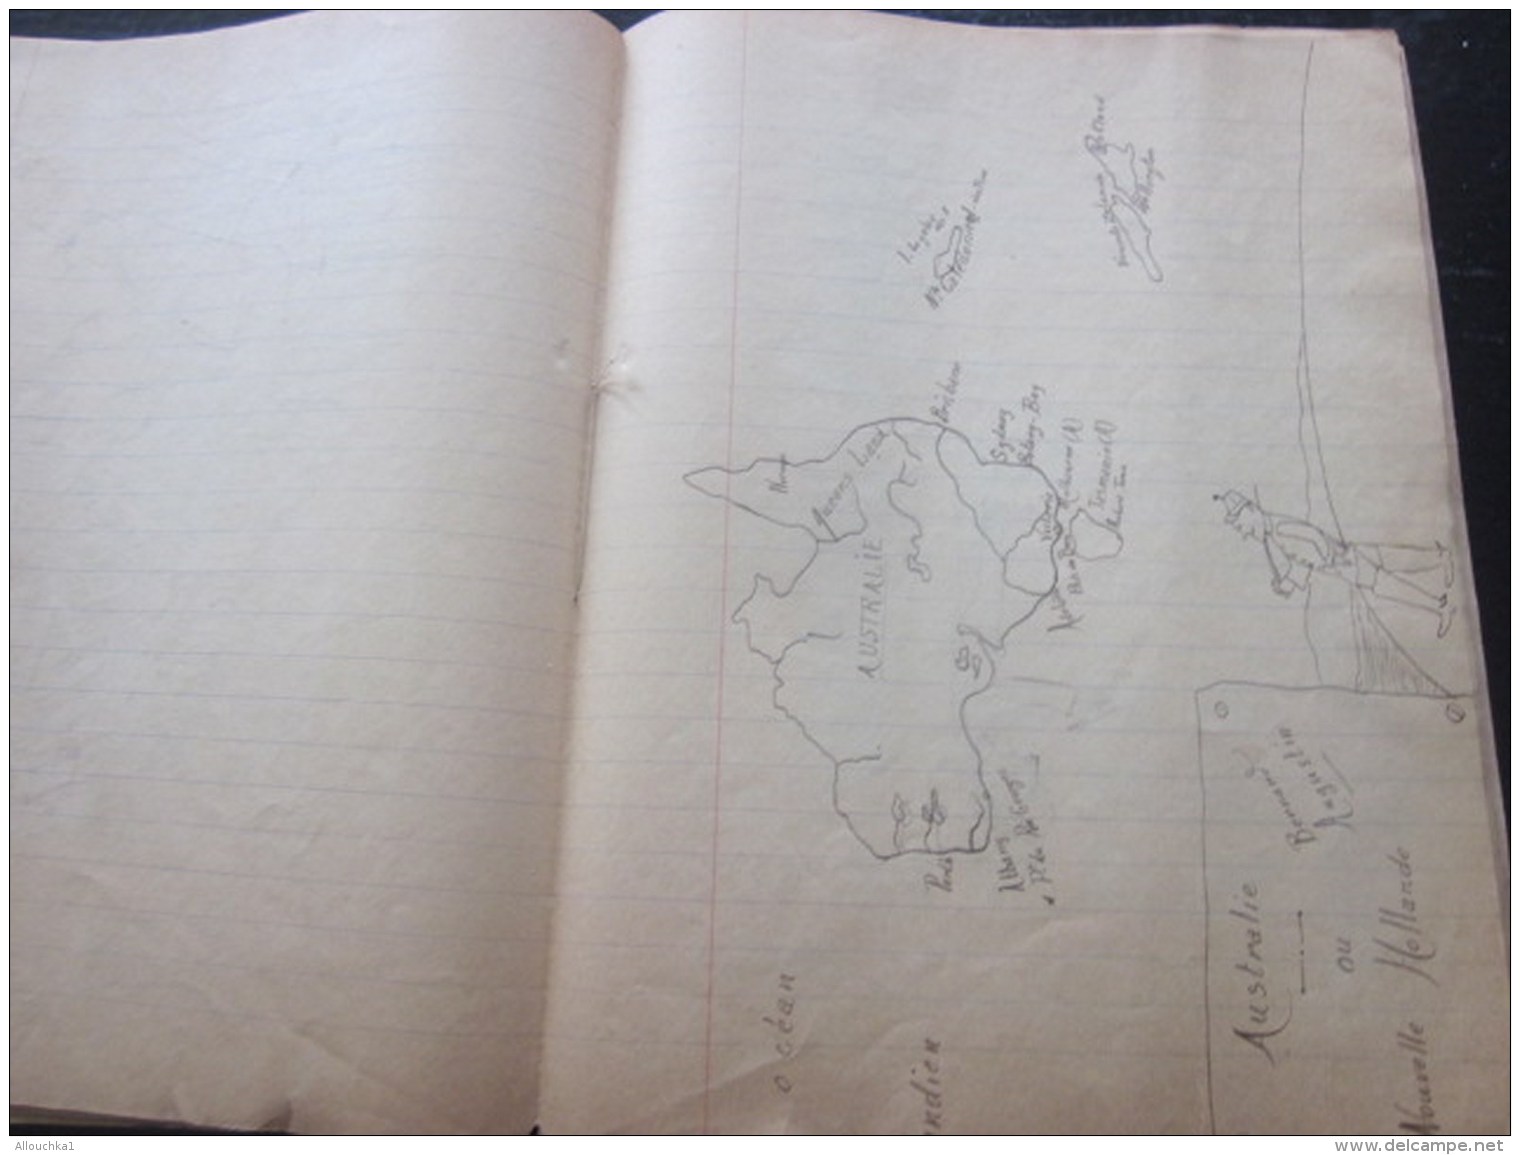 1944 Marseille Cahier d&rsquo;école Manuscrit d&rsquo;écolier Apprentissage écriture Porte Plume à encre dessins au cray